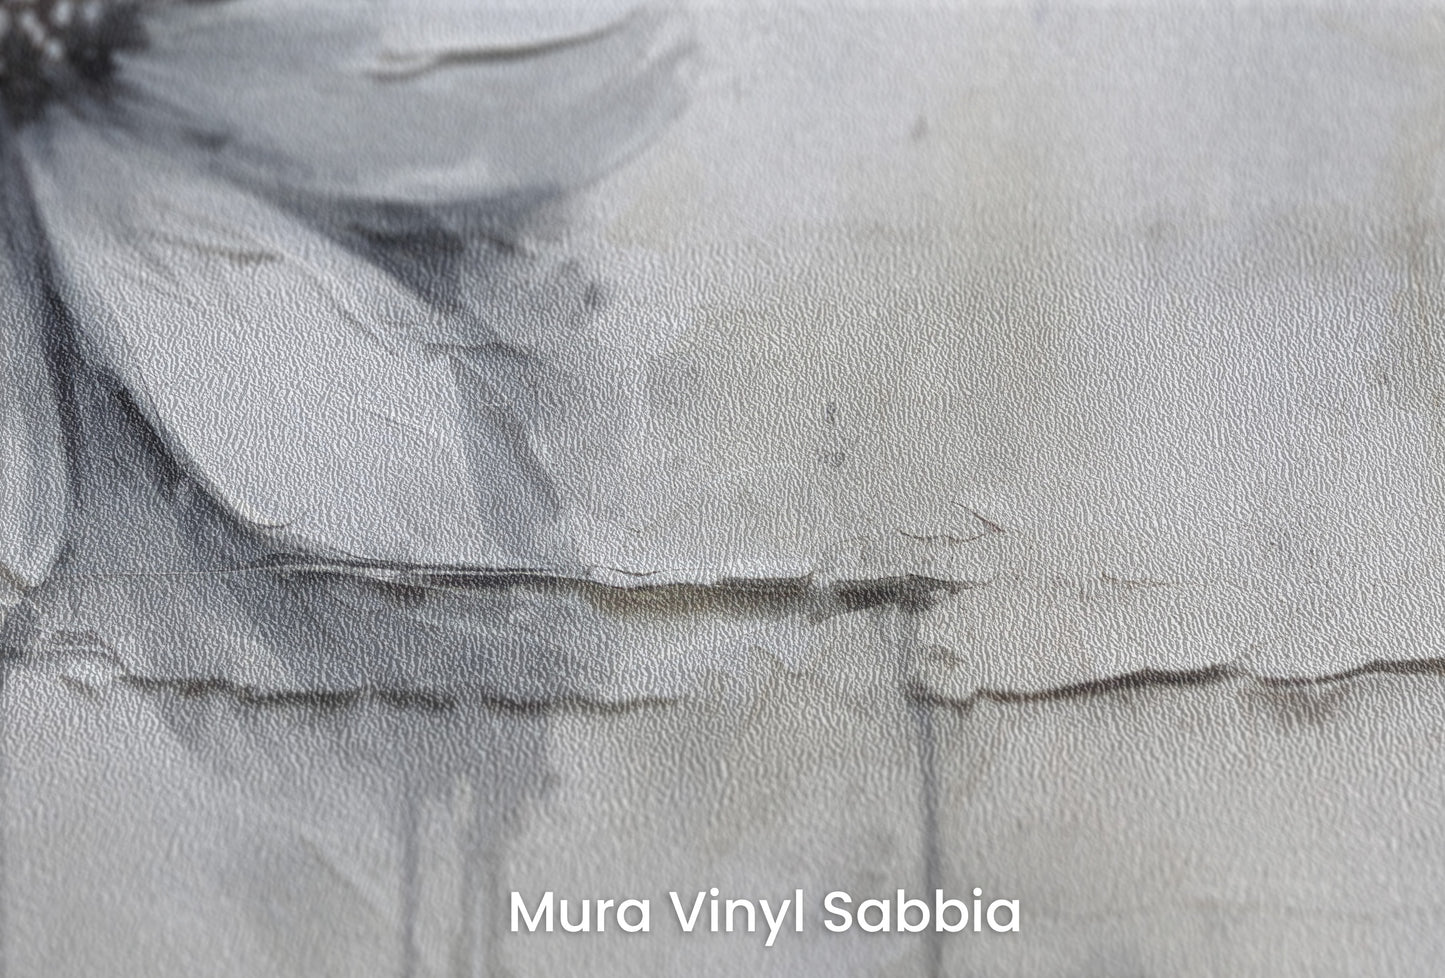 Zbliżenie na artystyczną fototapetę o nazwie SILVER BLOSSOM ABSTRACT na podłożu Mura Vinyl Sabbia struktura grubego ziarna piasku.